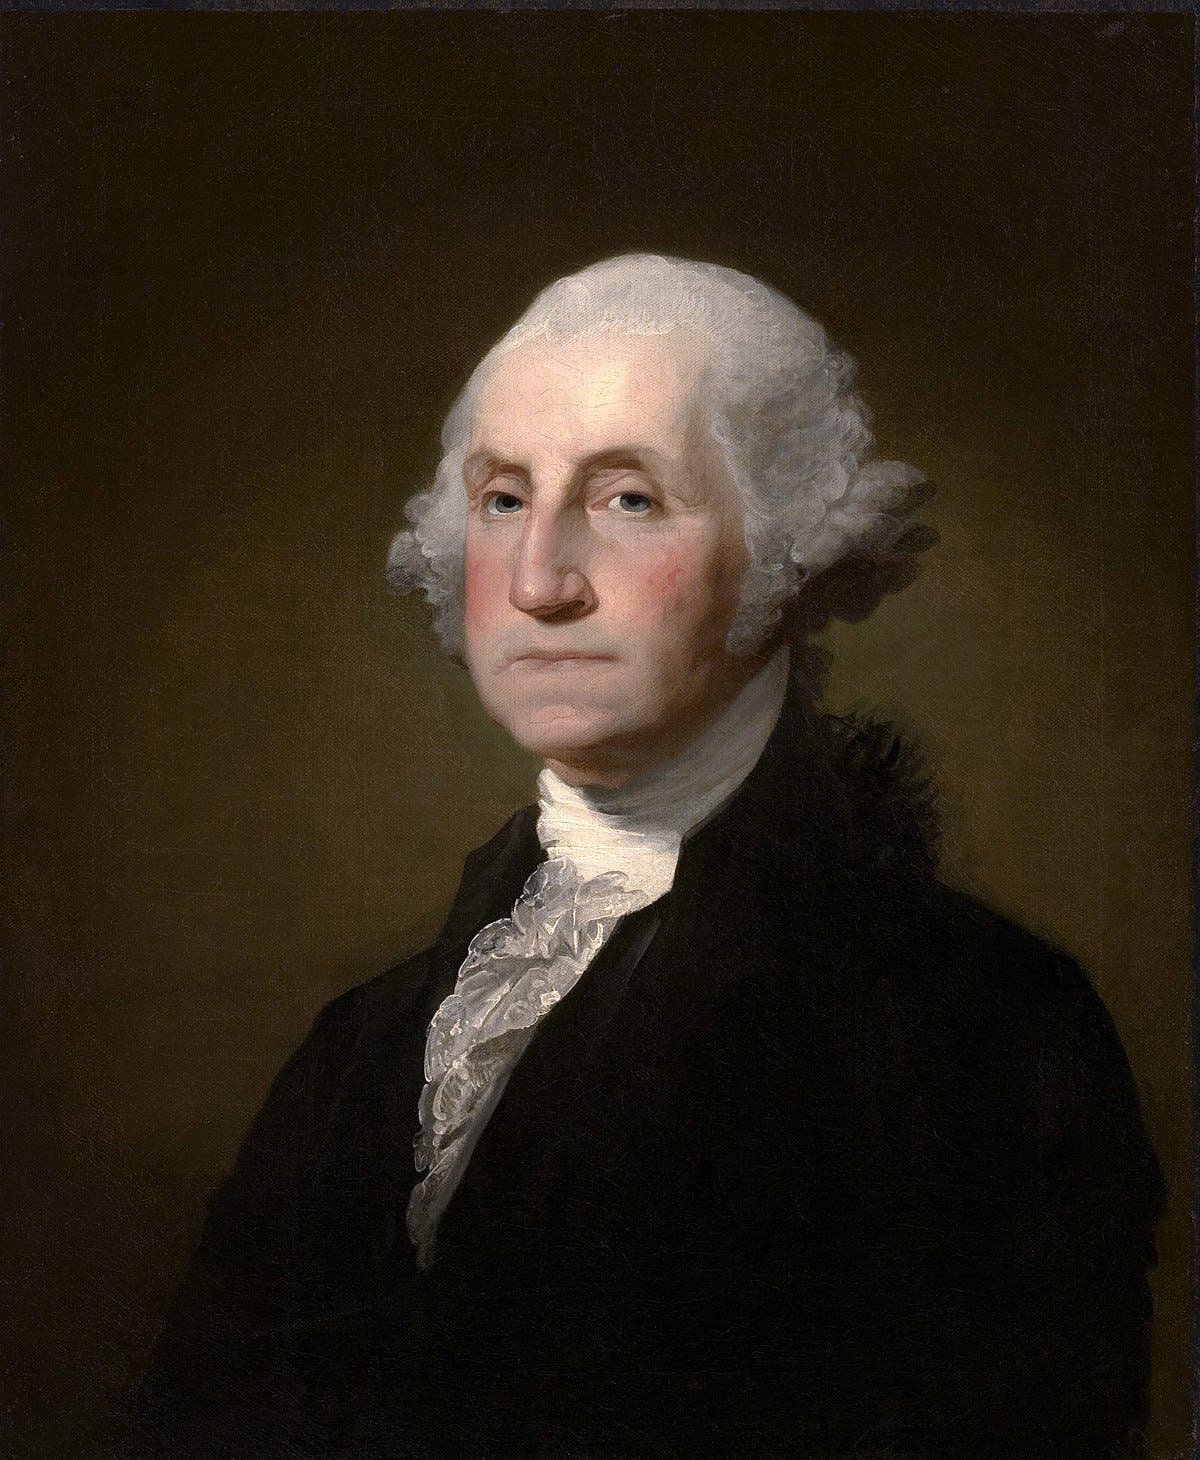 لوحة زيتية تجسد شخصية جورج واشنطن